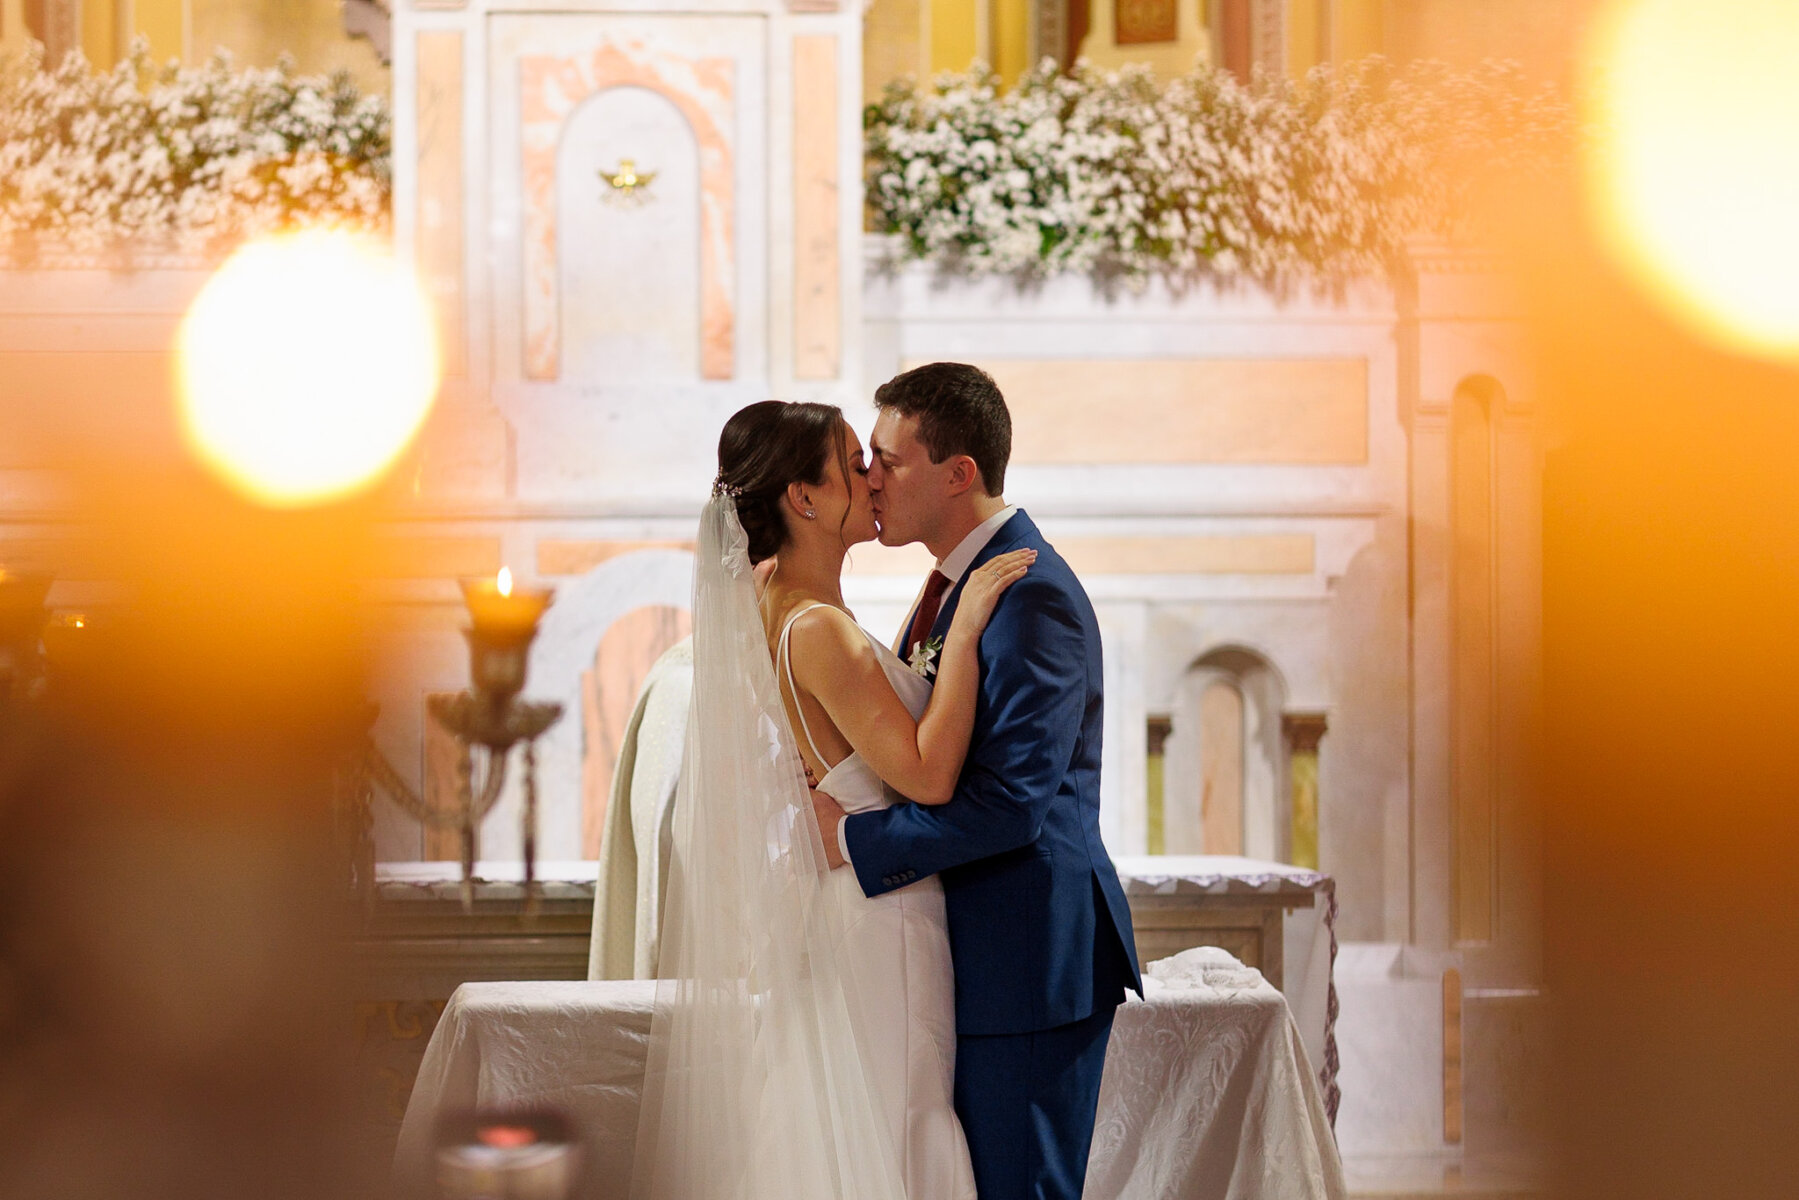 Casamento moderno: Noivos no altar | Foto: Emerson Fiuza